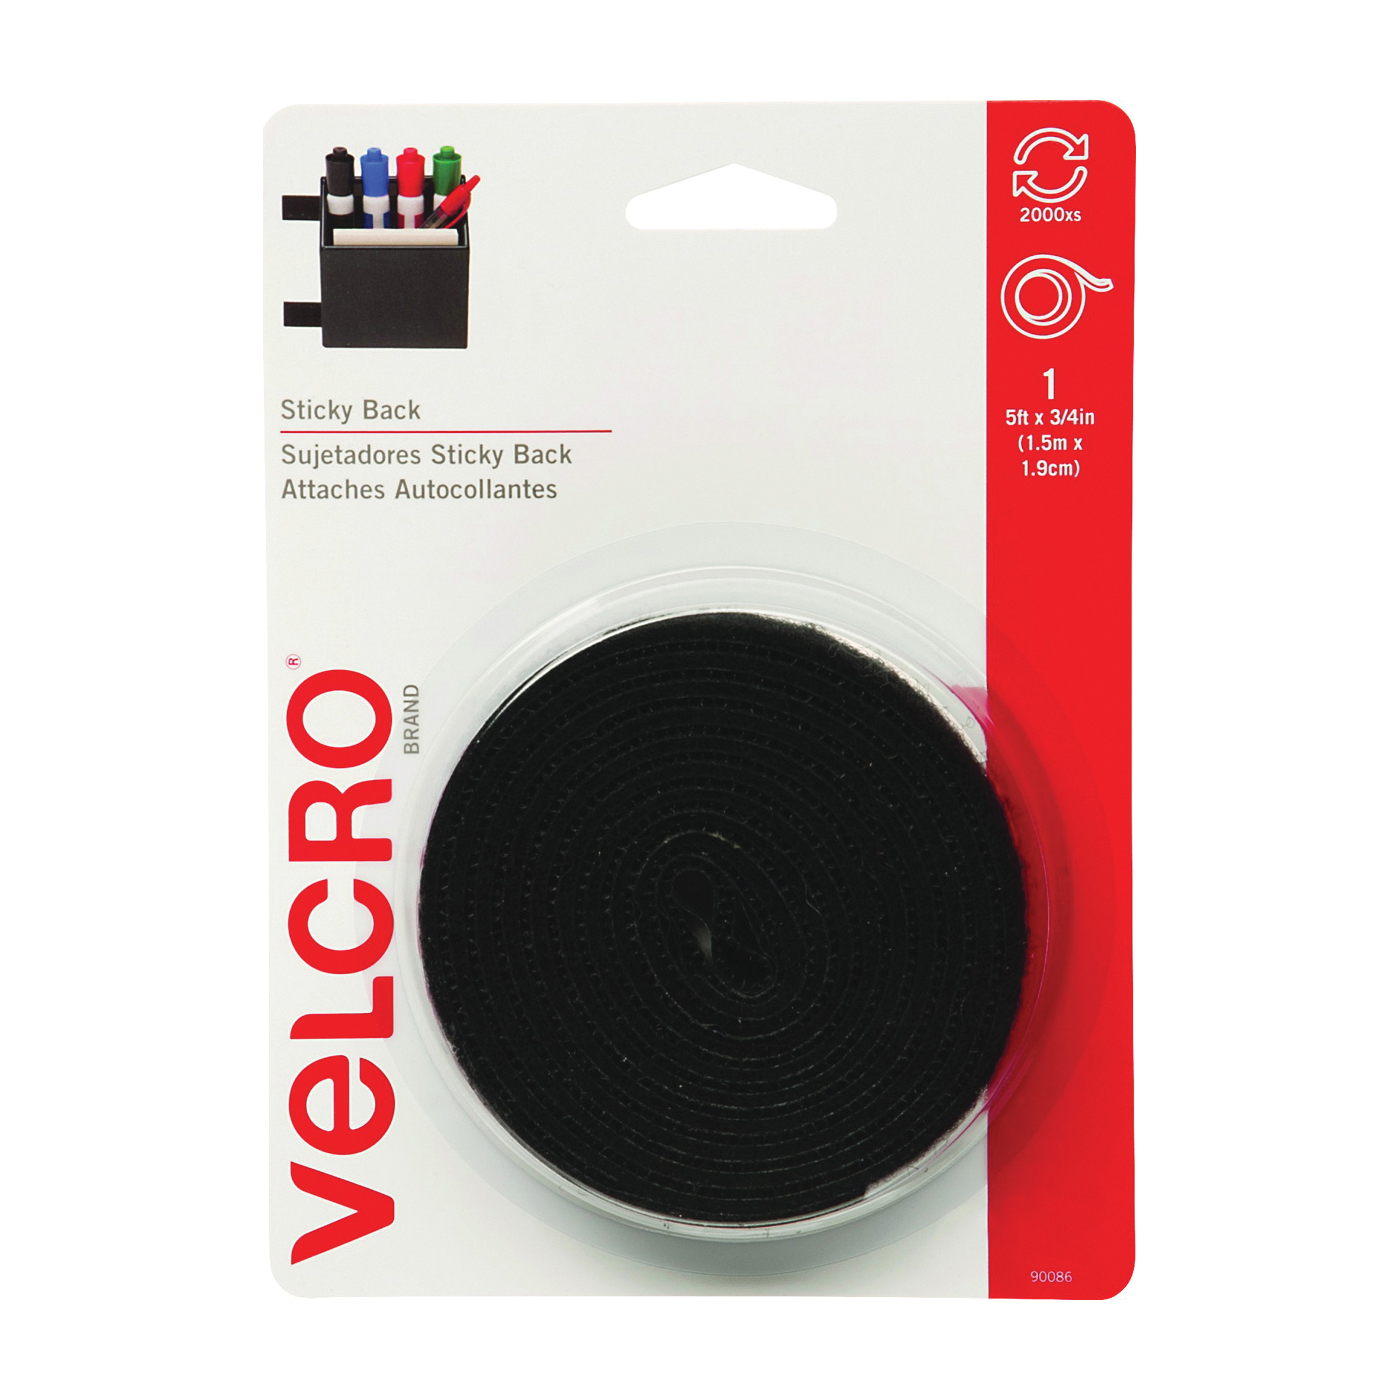 Velcro Brand 90086